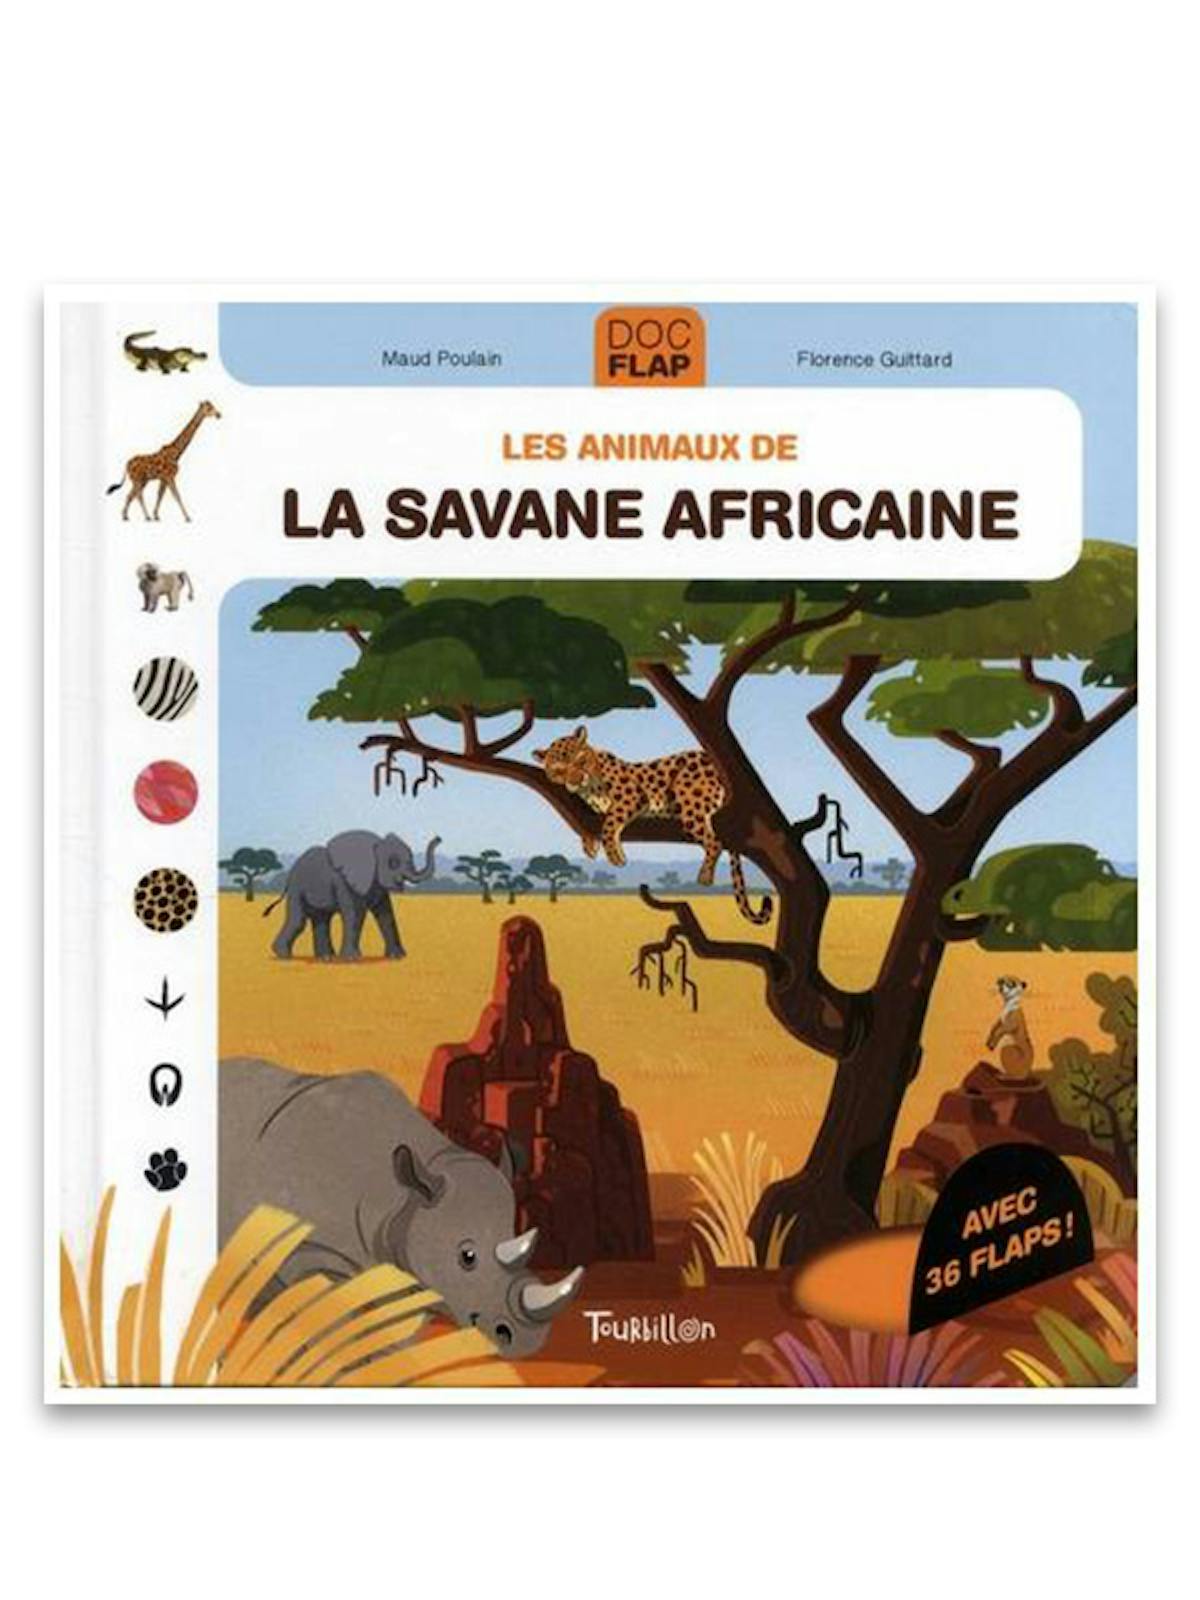 La savane africaine